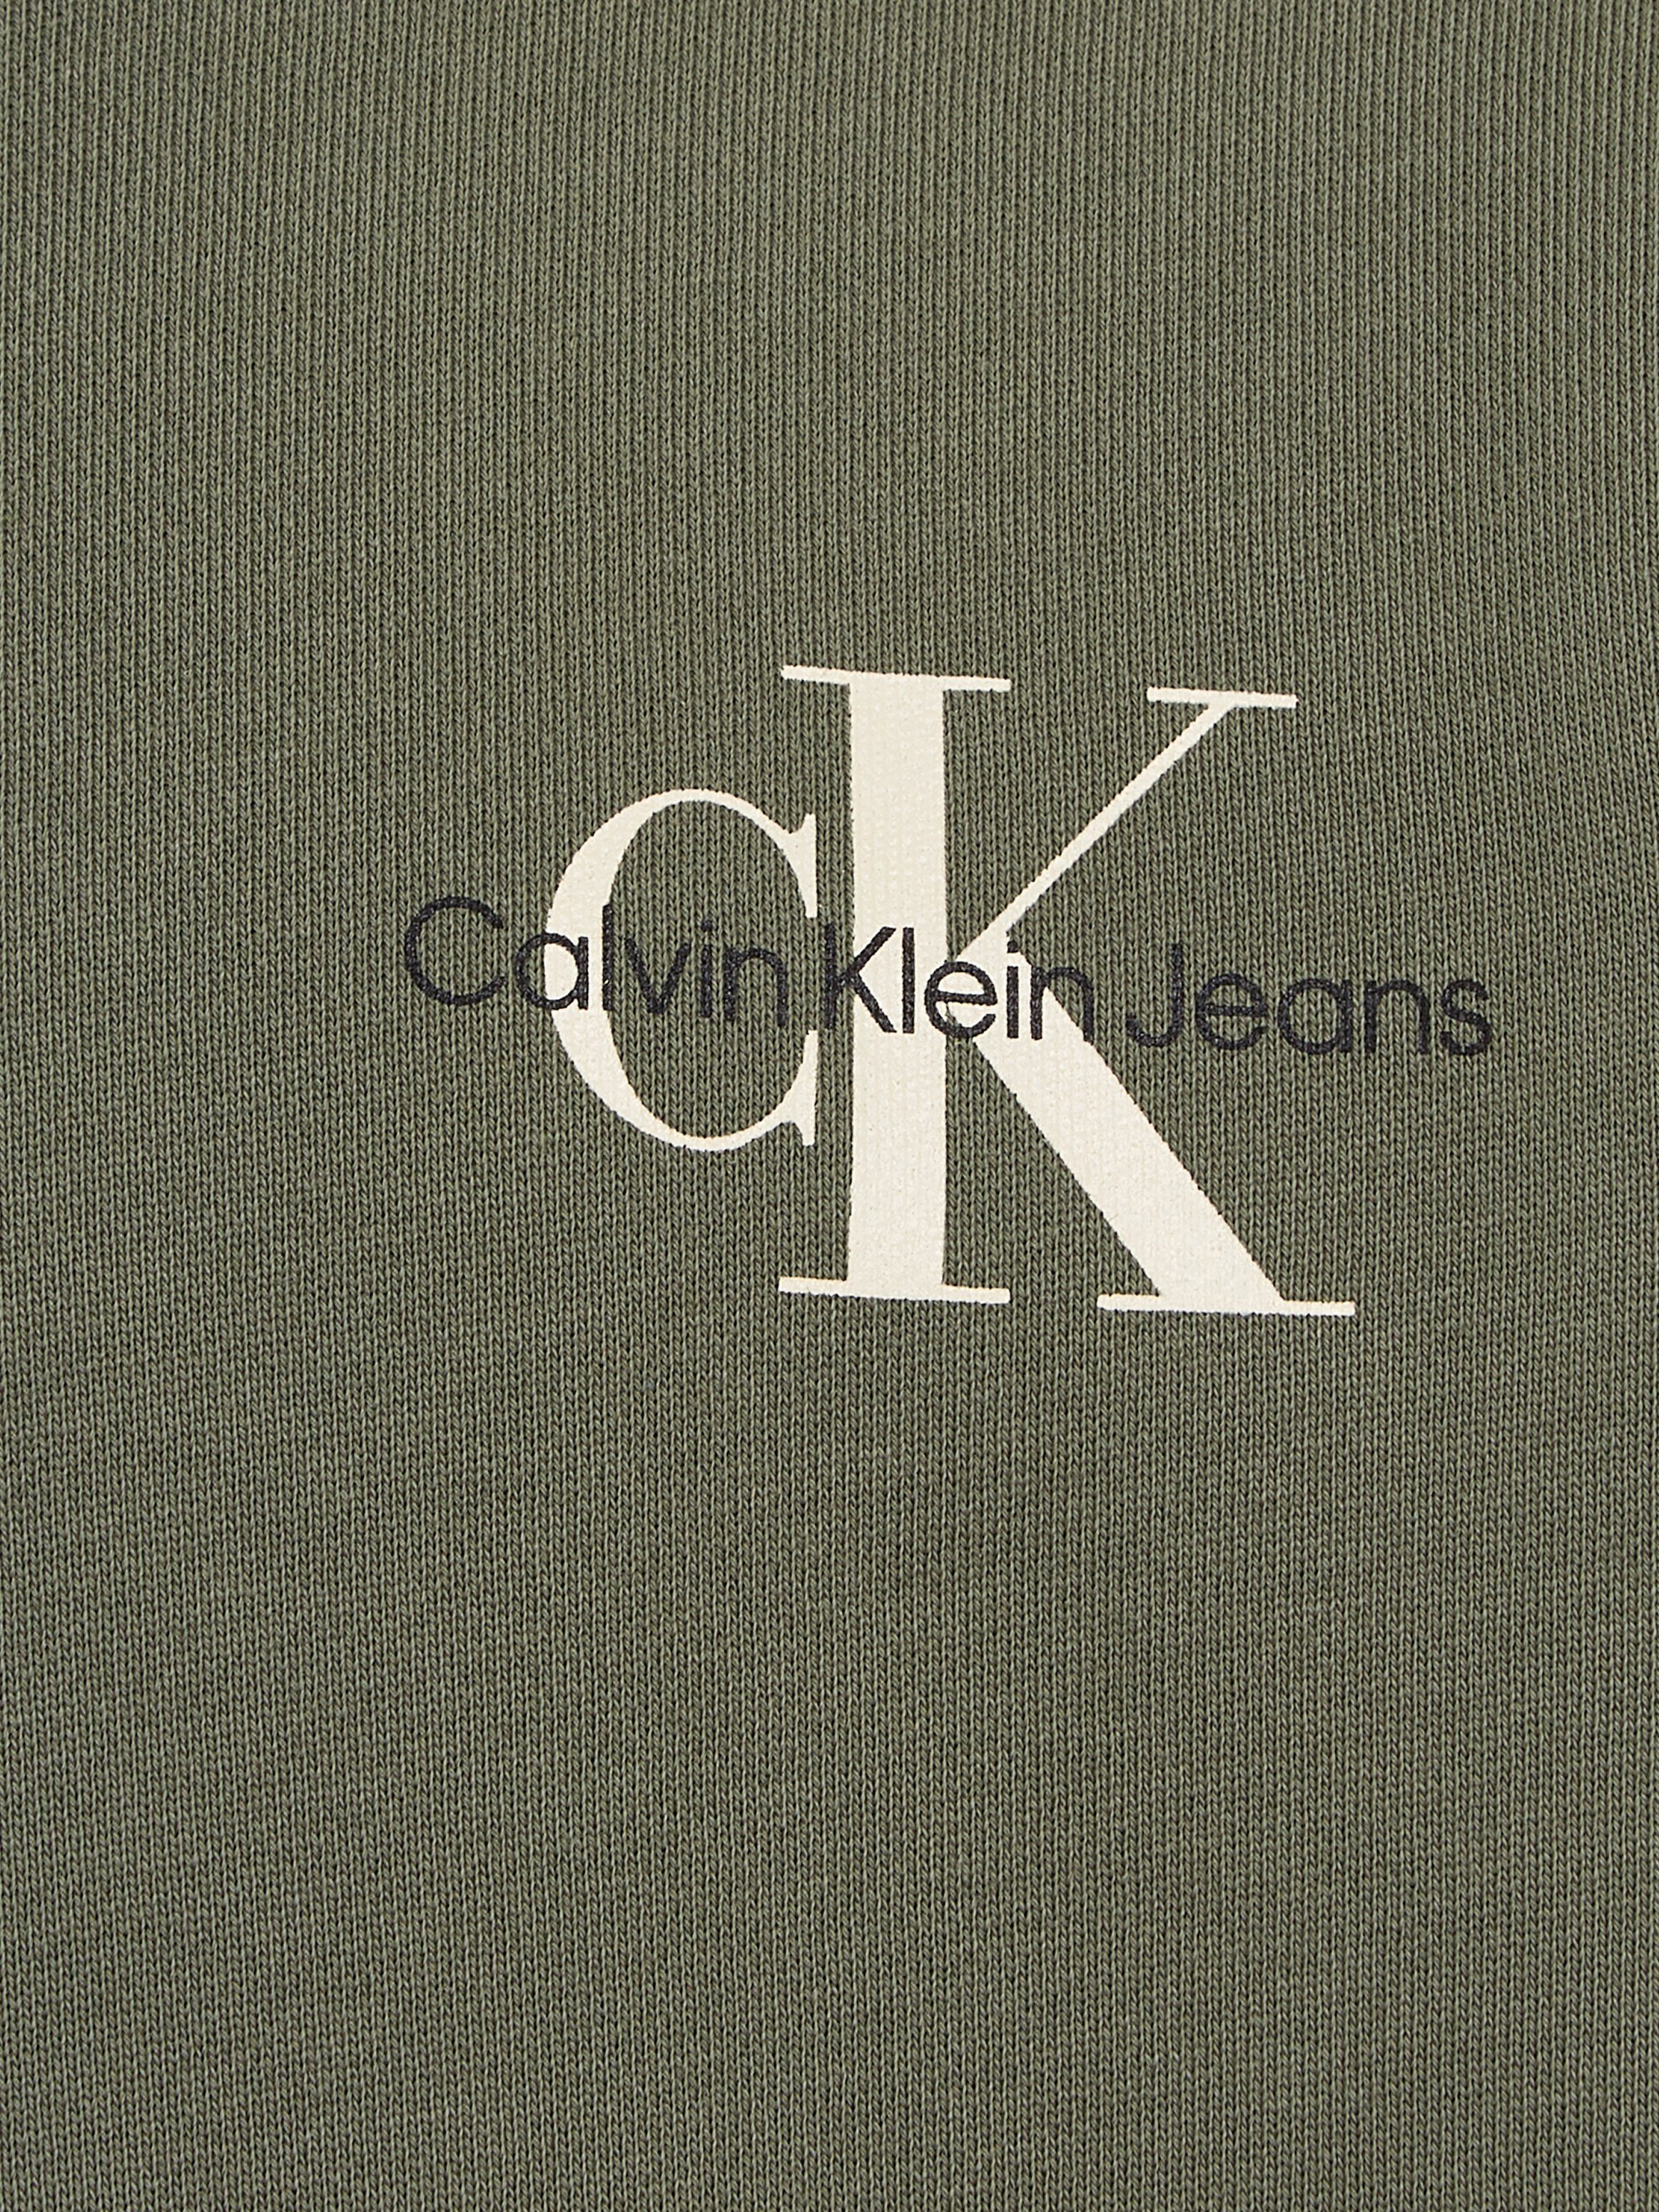 Calvin Klein Jeans Sweatshirt CN Dusty mit SWEATSHIRT MONOGRAM Logodruck Olive